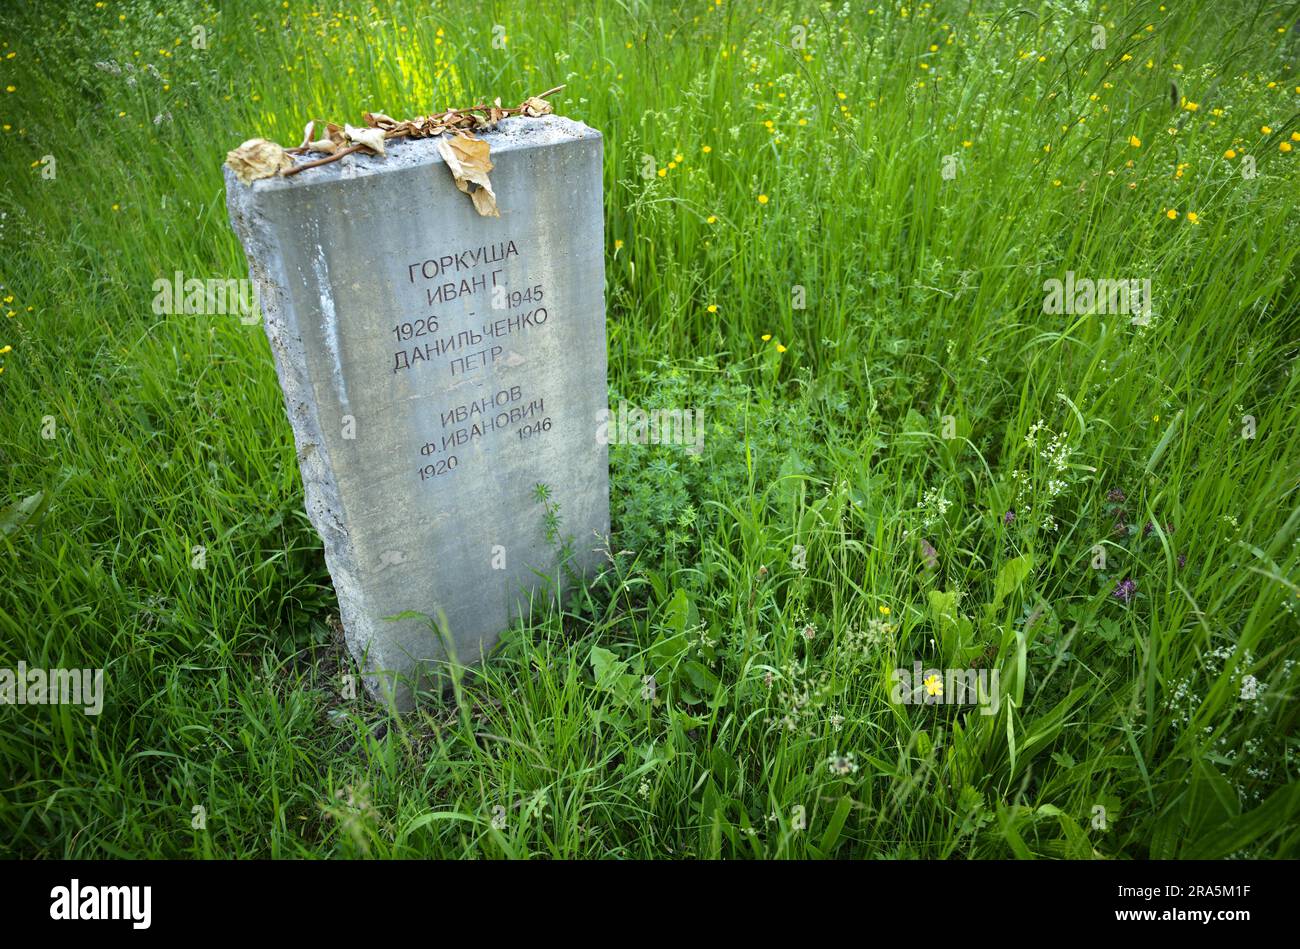 Grabstein für einen Soldaten, gefallen 1945, sowjetischer Ehrenfriedhof für die Rote Armee, Park an der Ilm, Ilmpark, Weimar, Thüringen, Deutschland Stockfoto